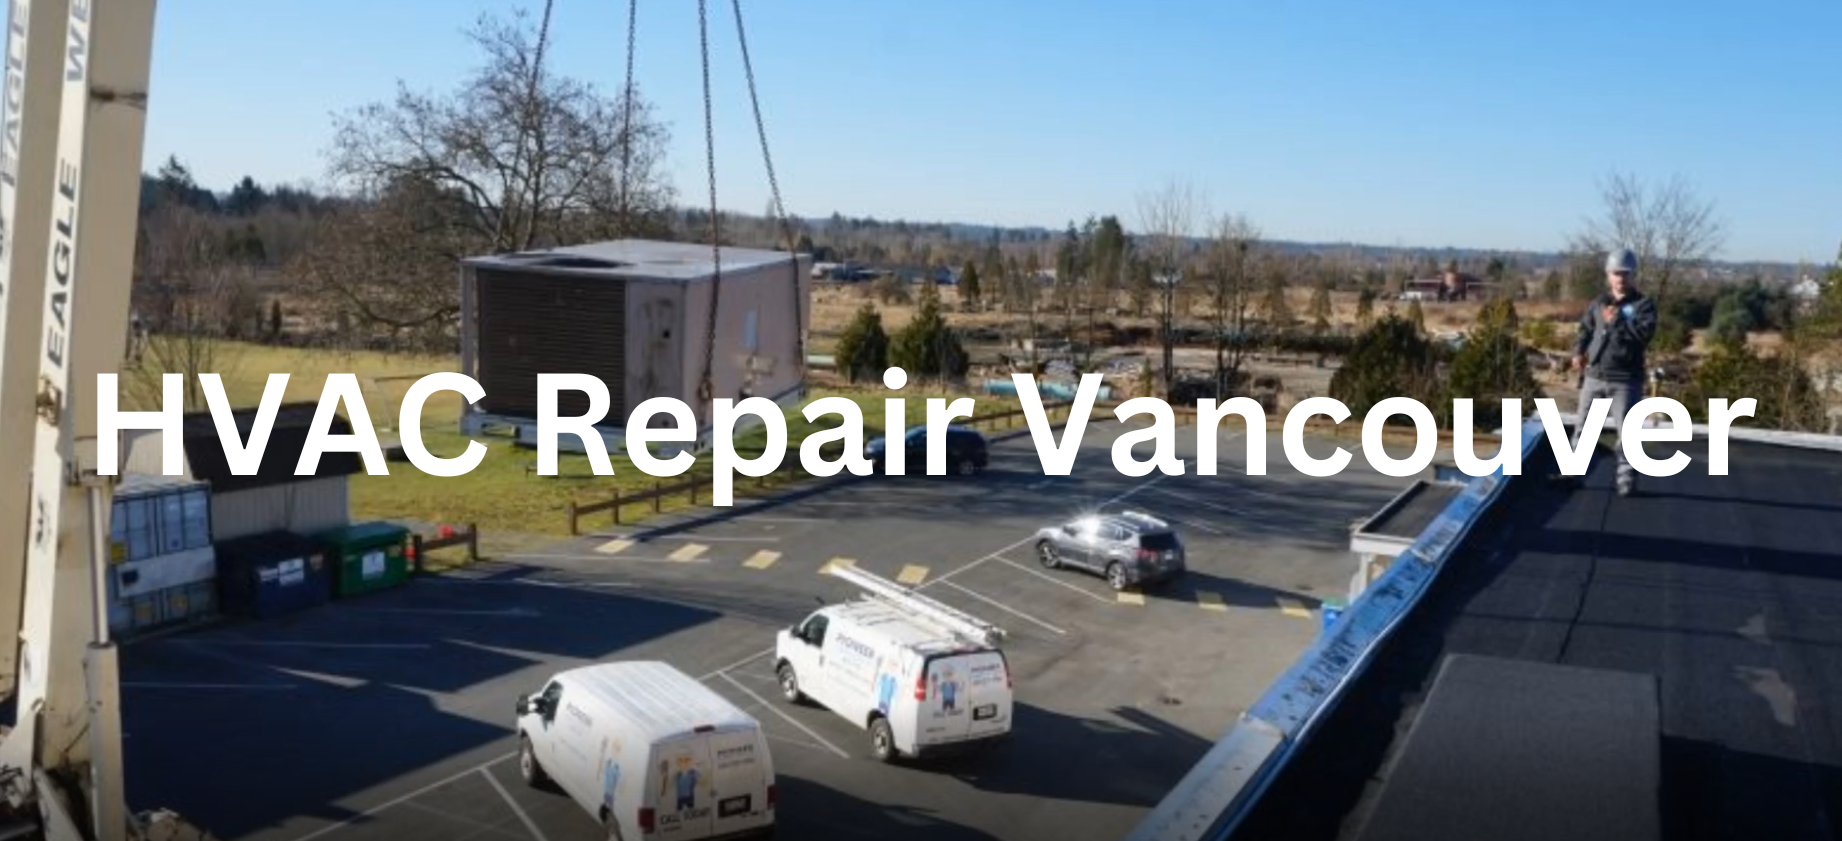 HVAC Repair Vancouver